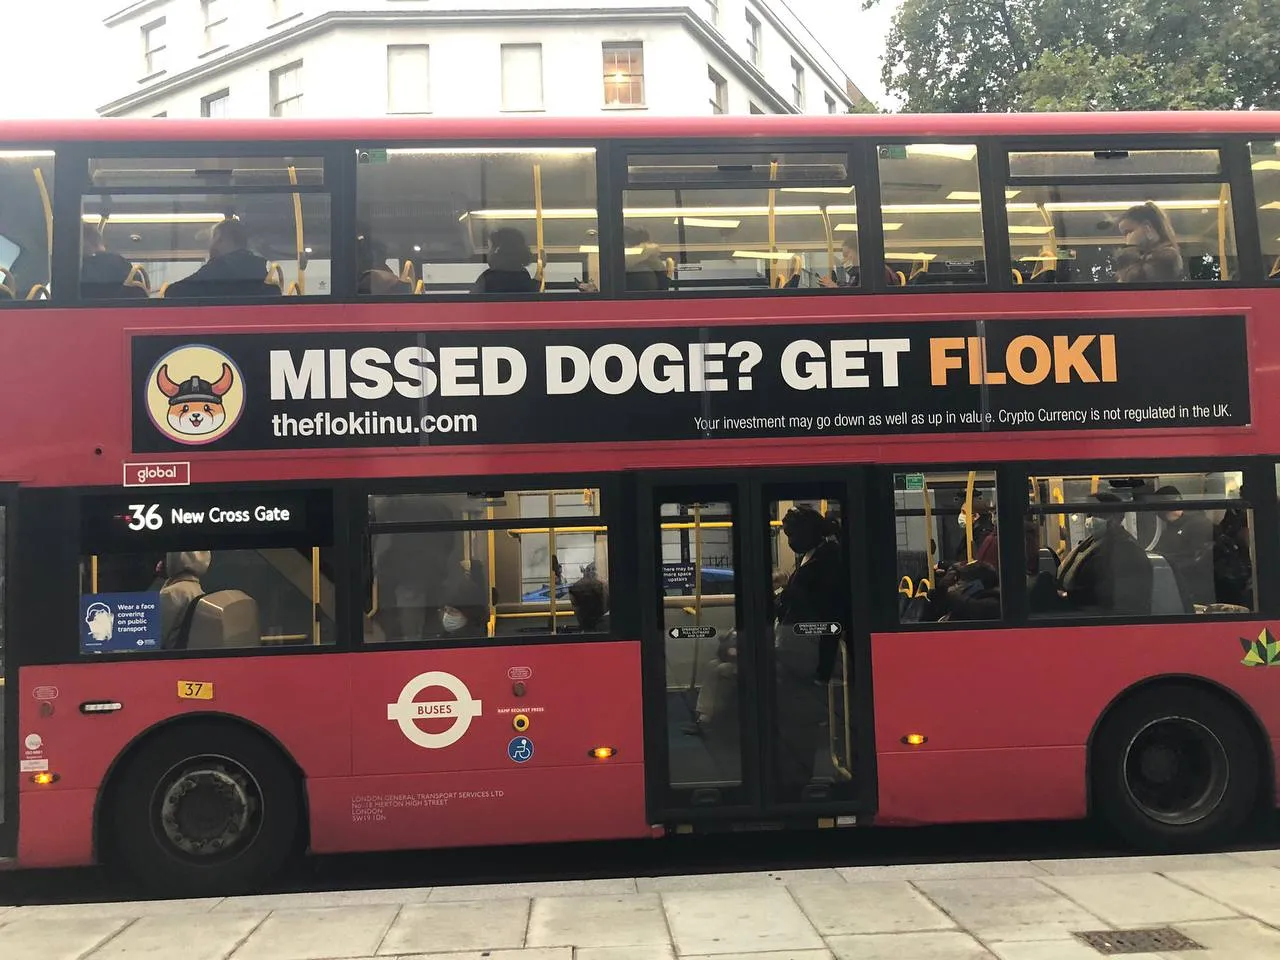 A Floki ad on a London bus.